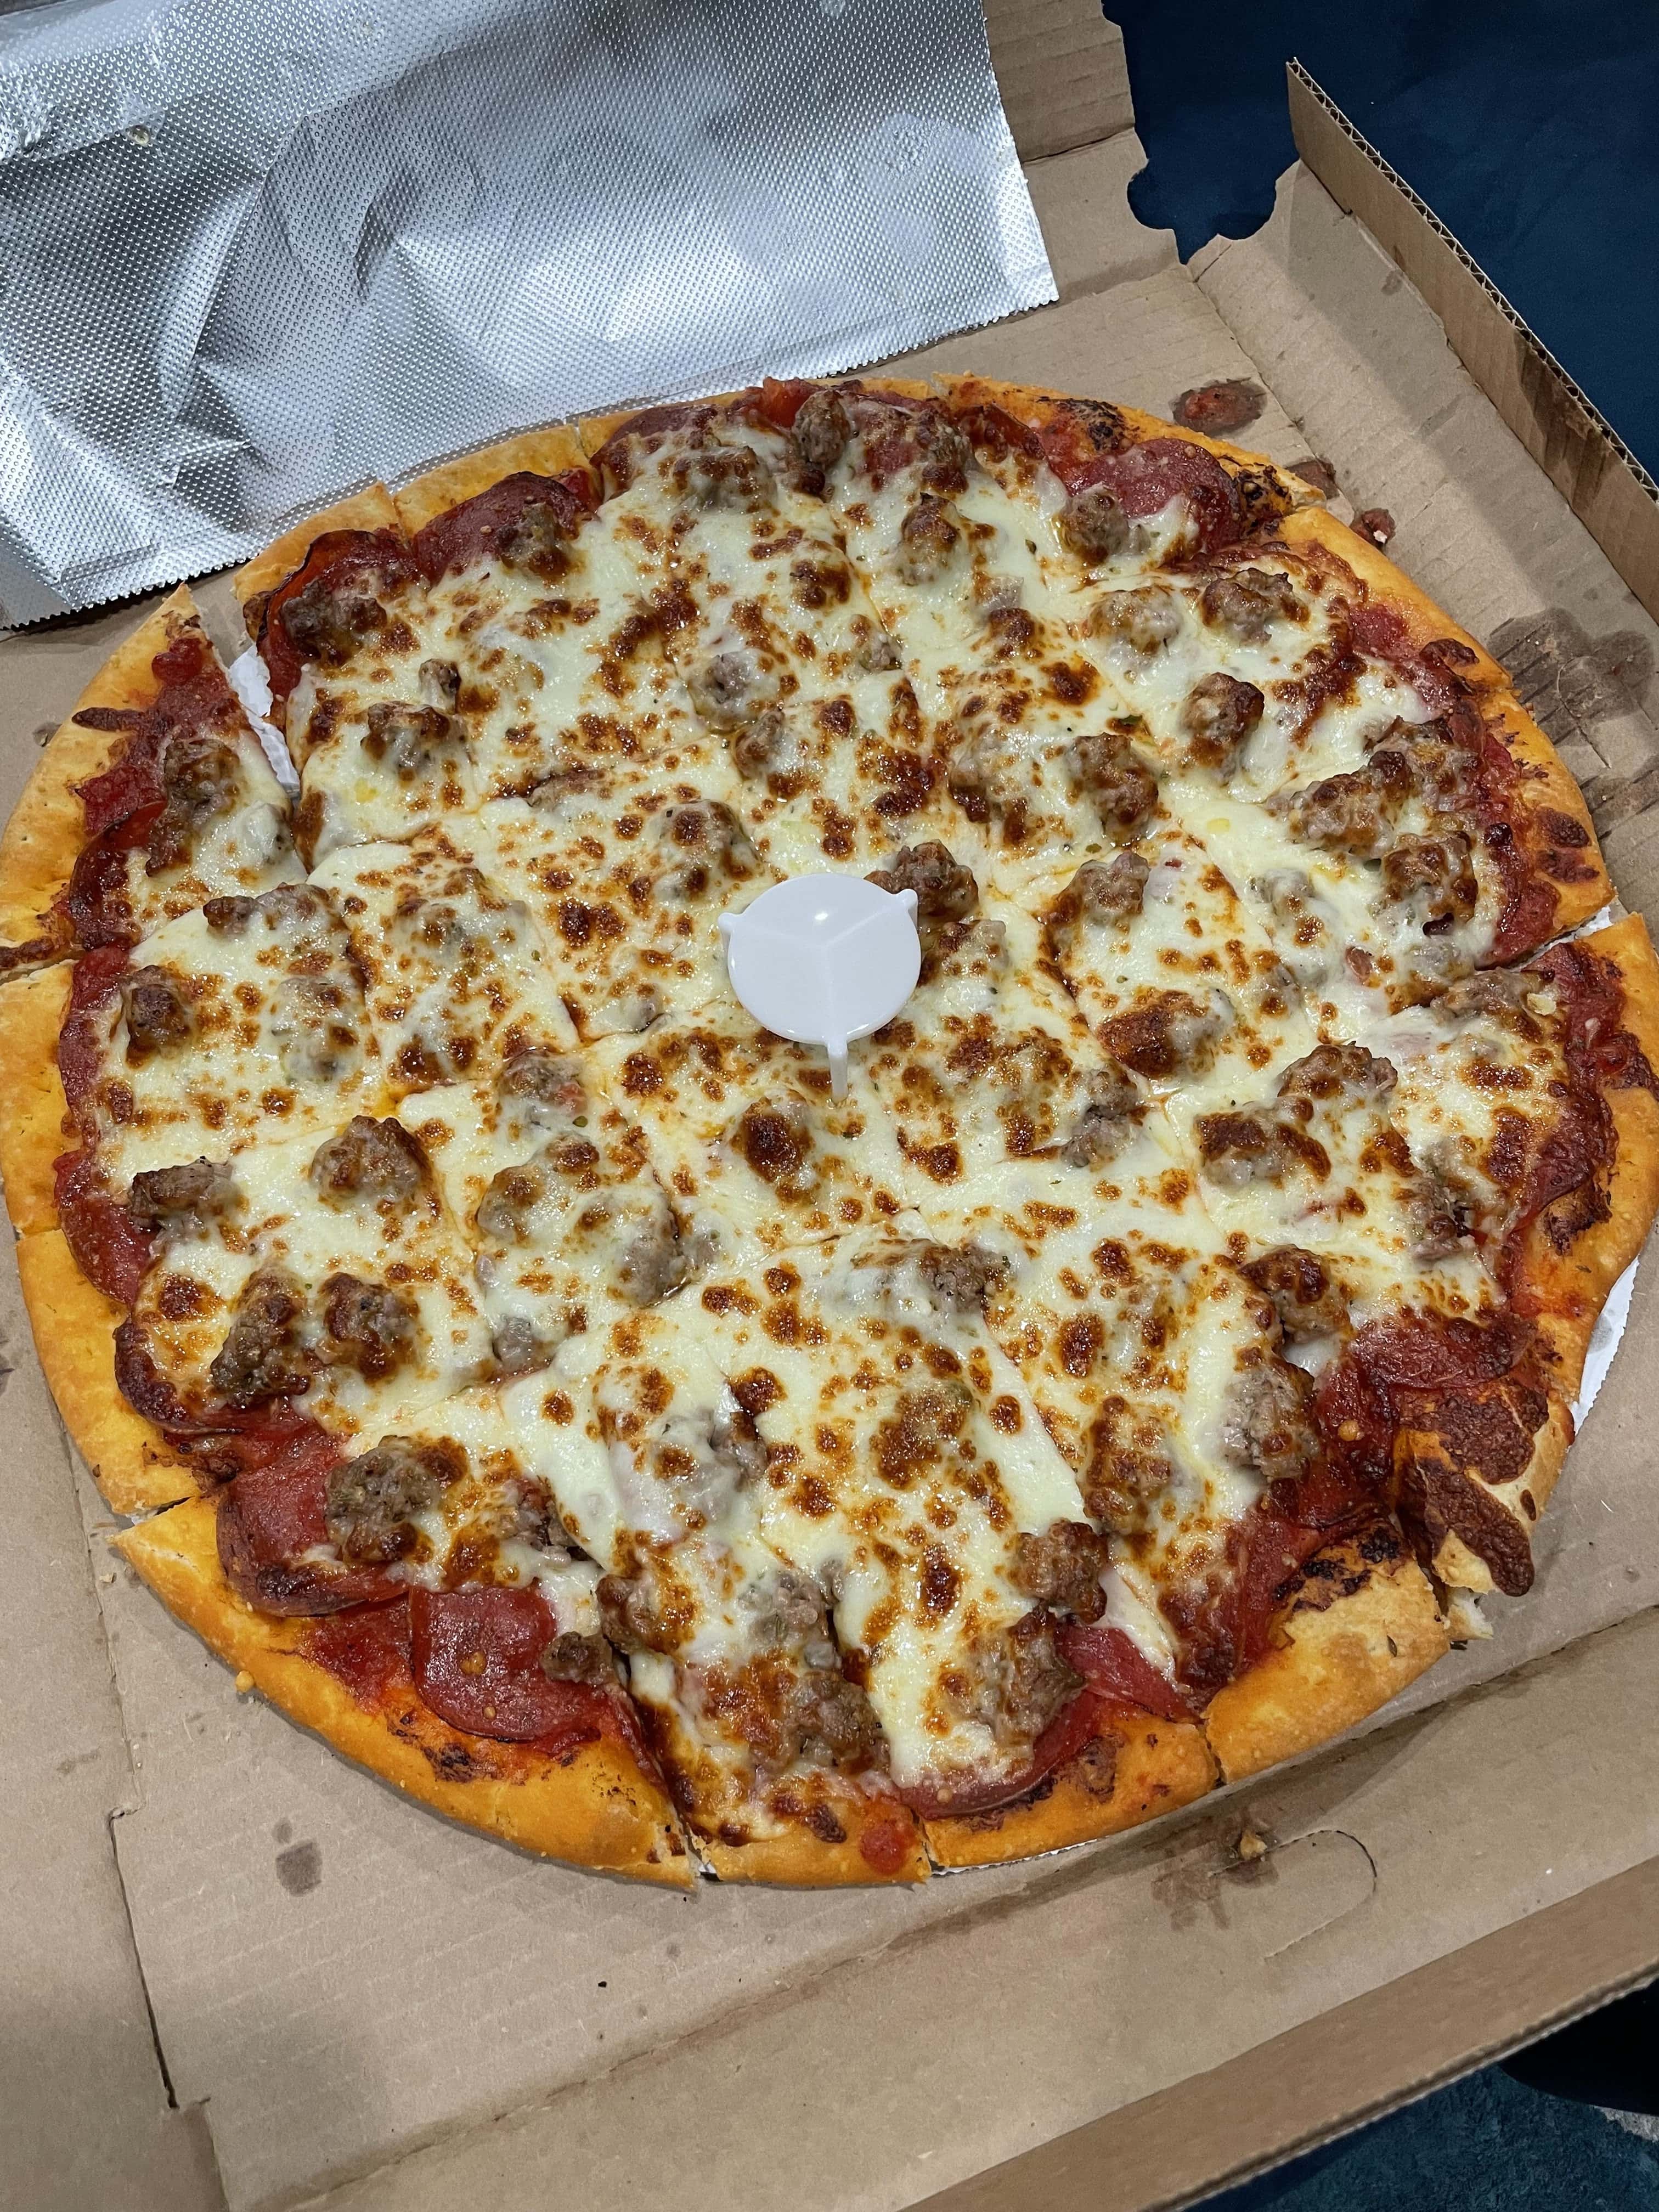 Nancy’s Pizza - Alsip (IL 60803), US, famous pizza